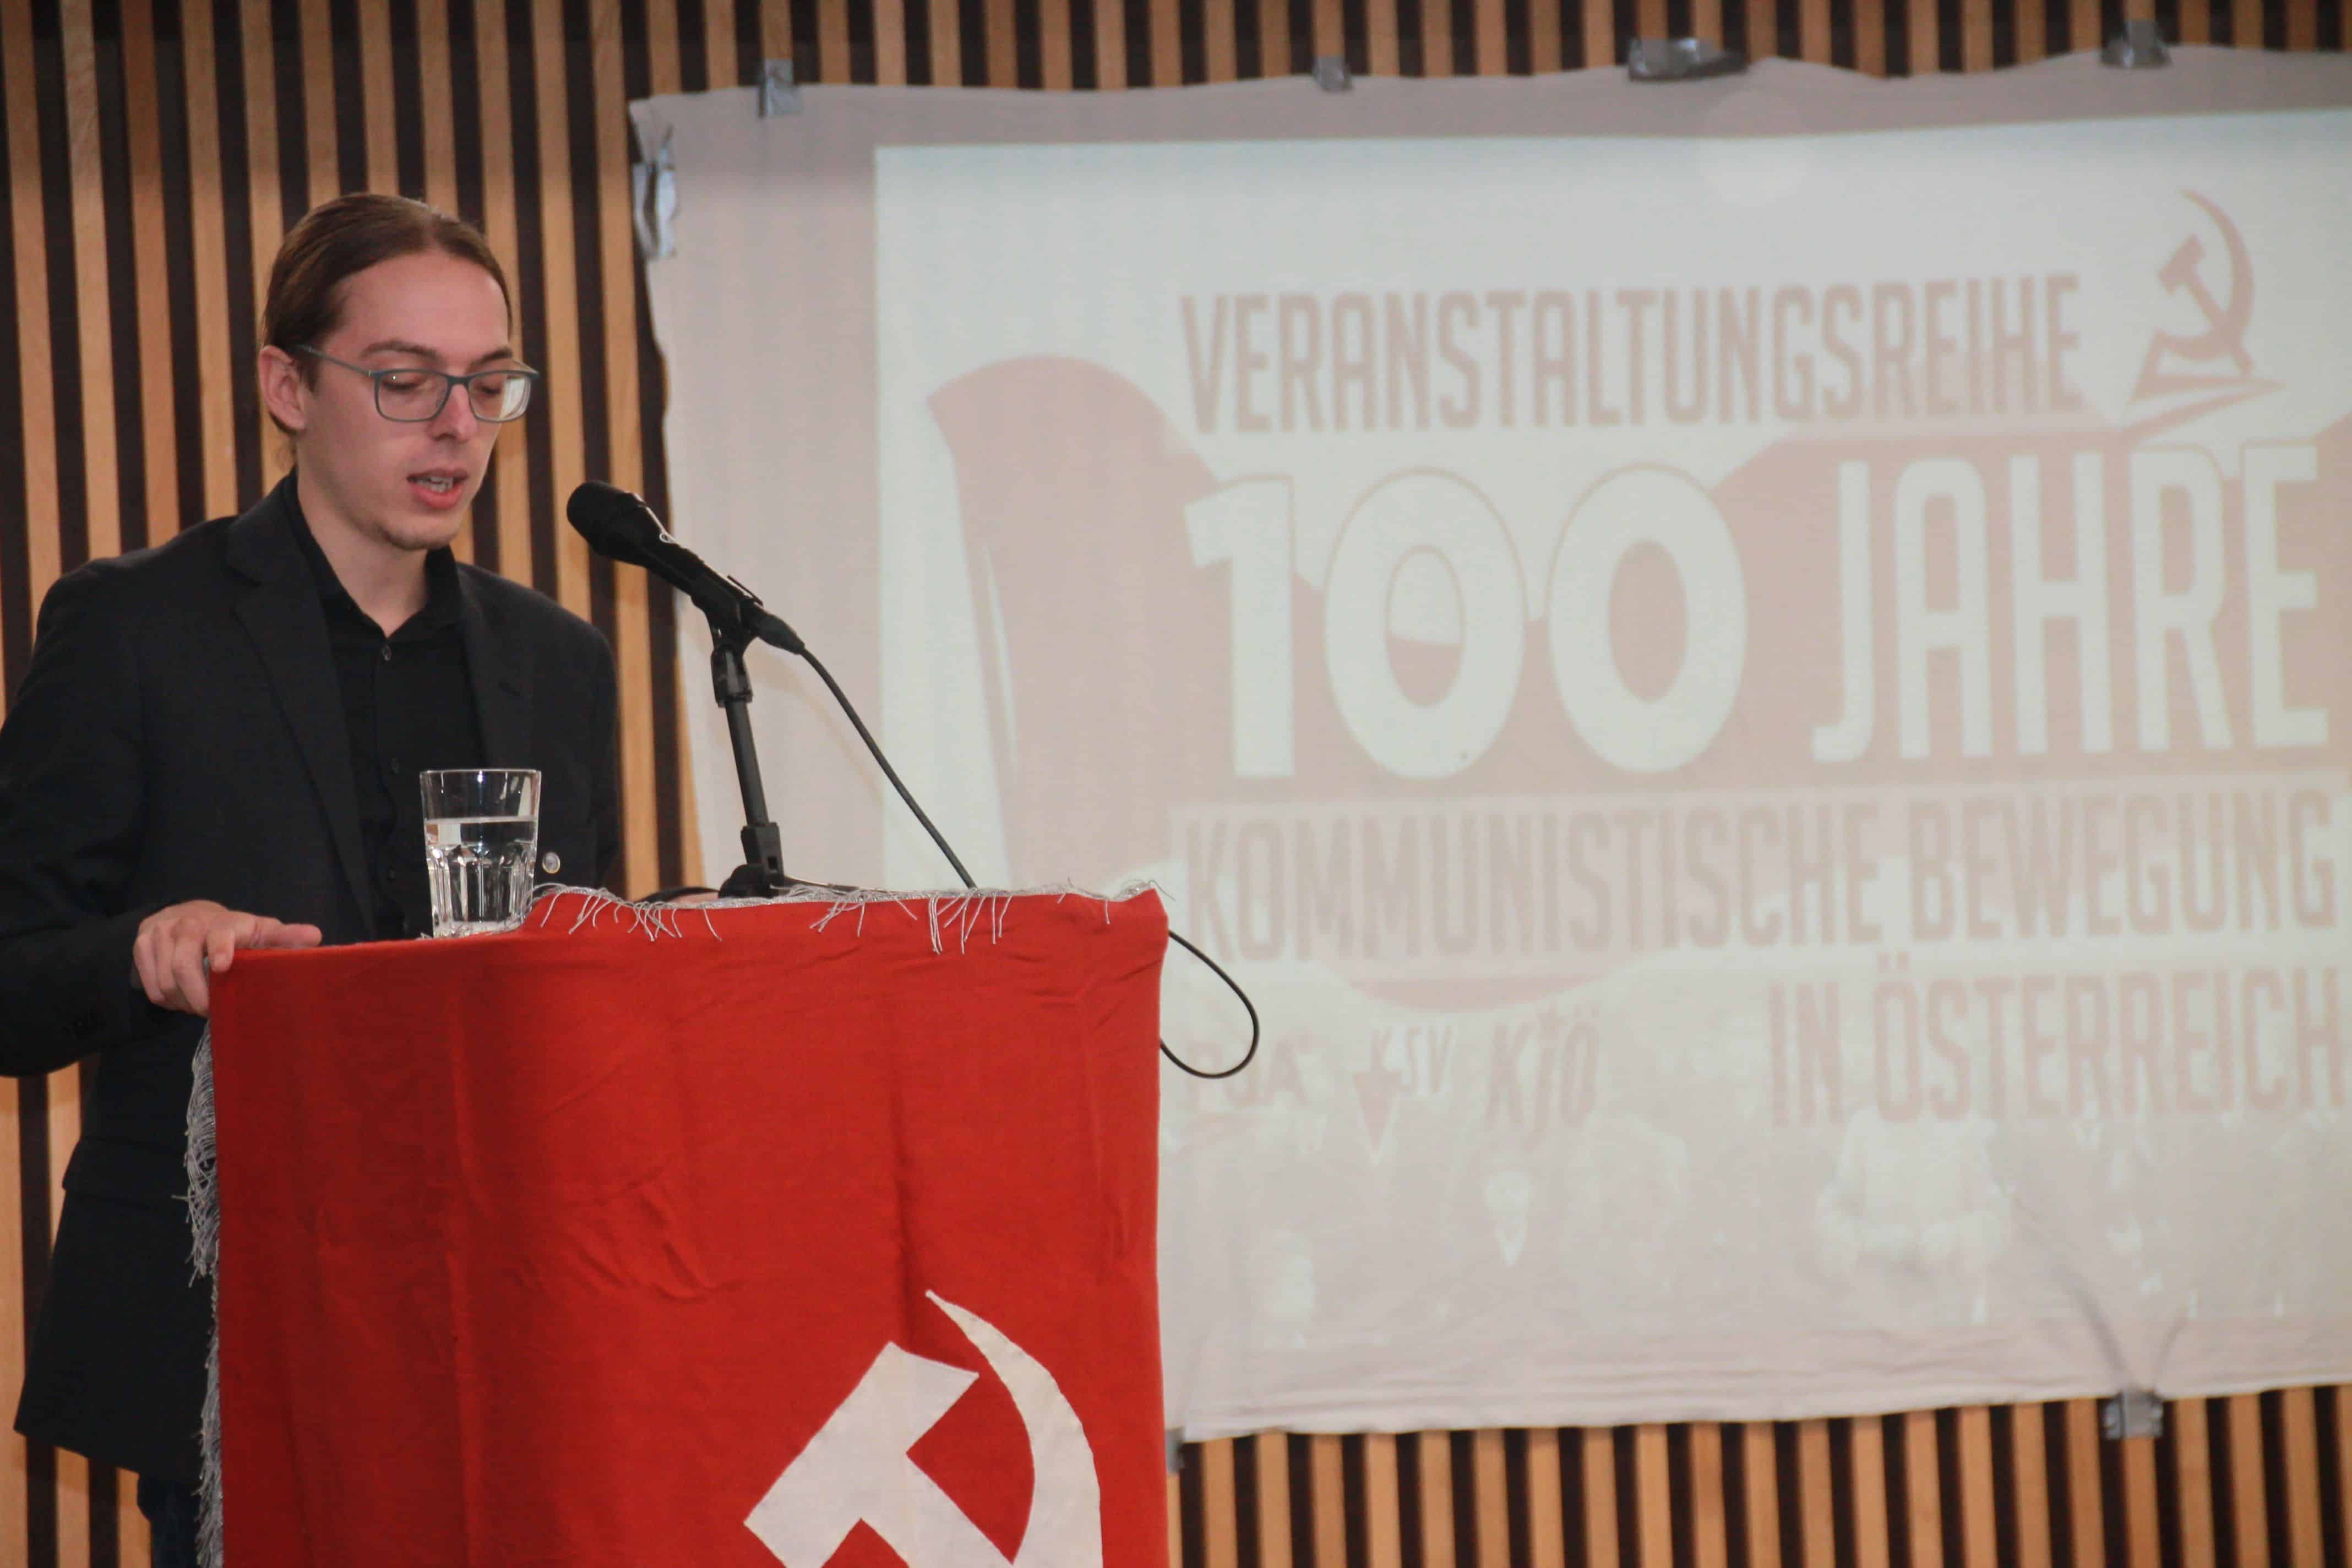 KJÖ-Bundesvorsitzender hält Festrede auf Veranstaltung zu 100 Jahre Kommunistischer Bewegung in Österreich